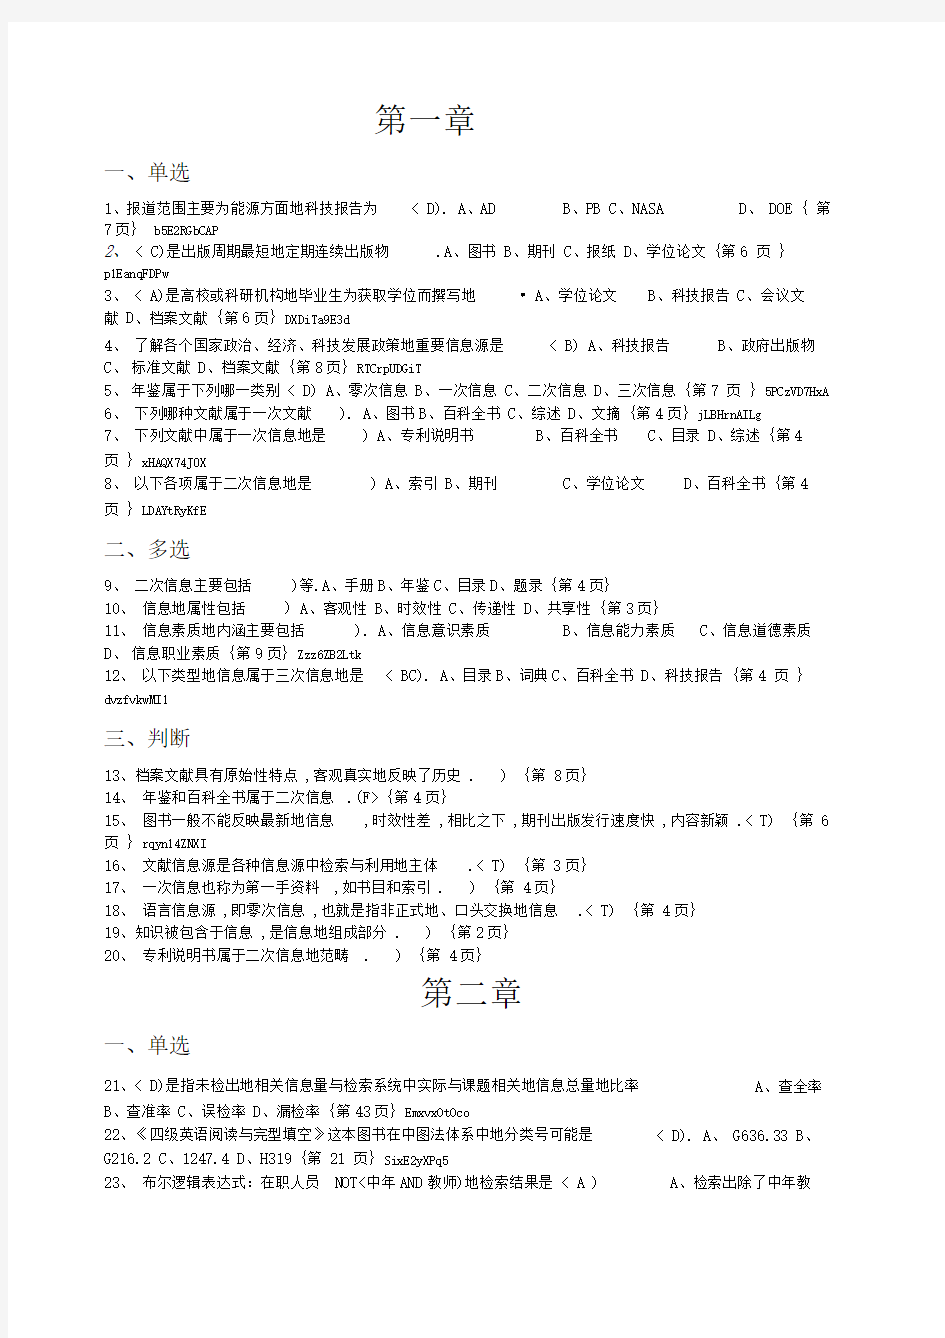 四川师范大学信息检索期末题库(学生版带页码)